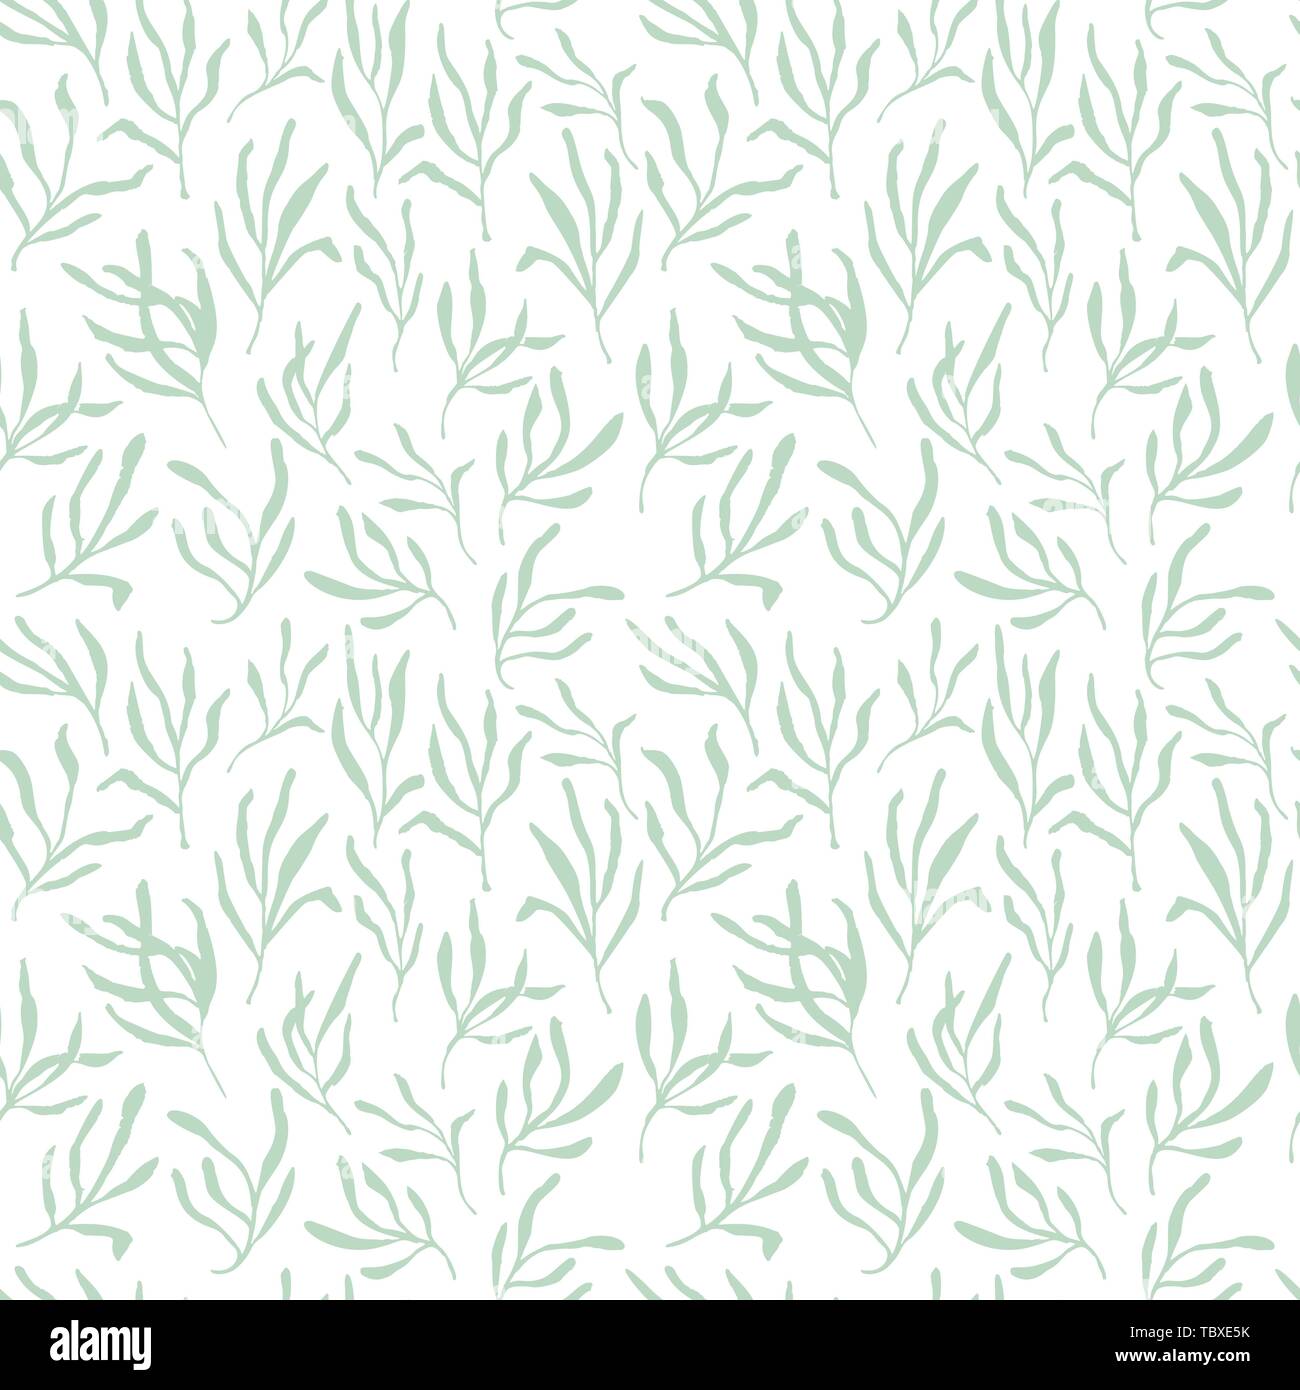 Estragon oder Estragon nahtlose Muster therapeutische green leaf Zweig. Isolierte Rosmarin Vector Illustration. Stock Vektor